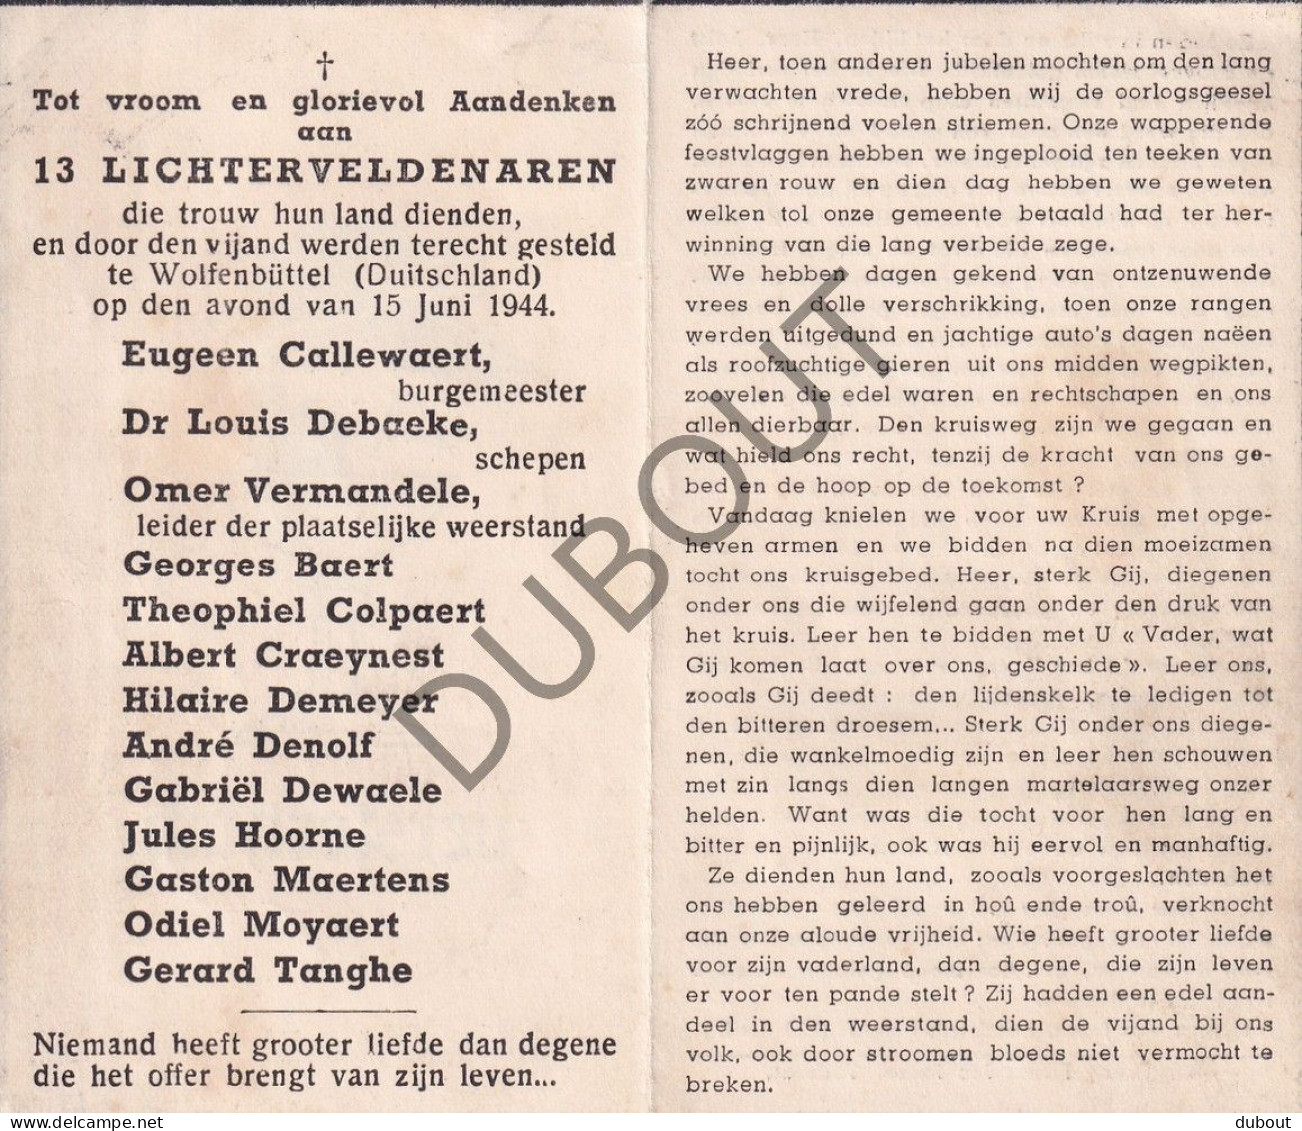 WOII - Lichtervelde, E. Callewaert, Burgemeester, E.a. - Terechtgesteld Te Wolfenbüttel Duitsland 1944 (F585) - Todesanzeige